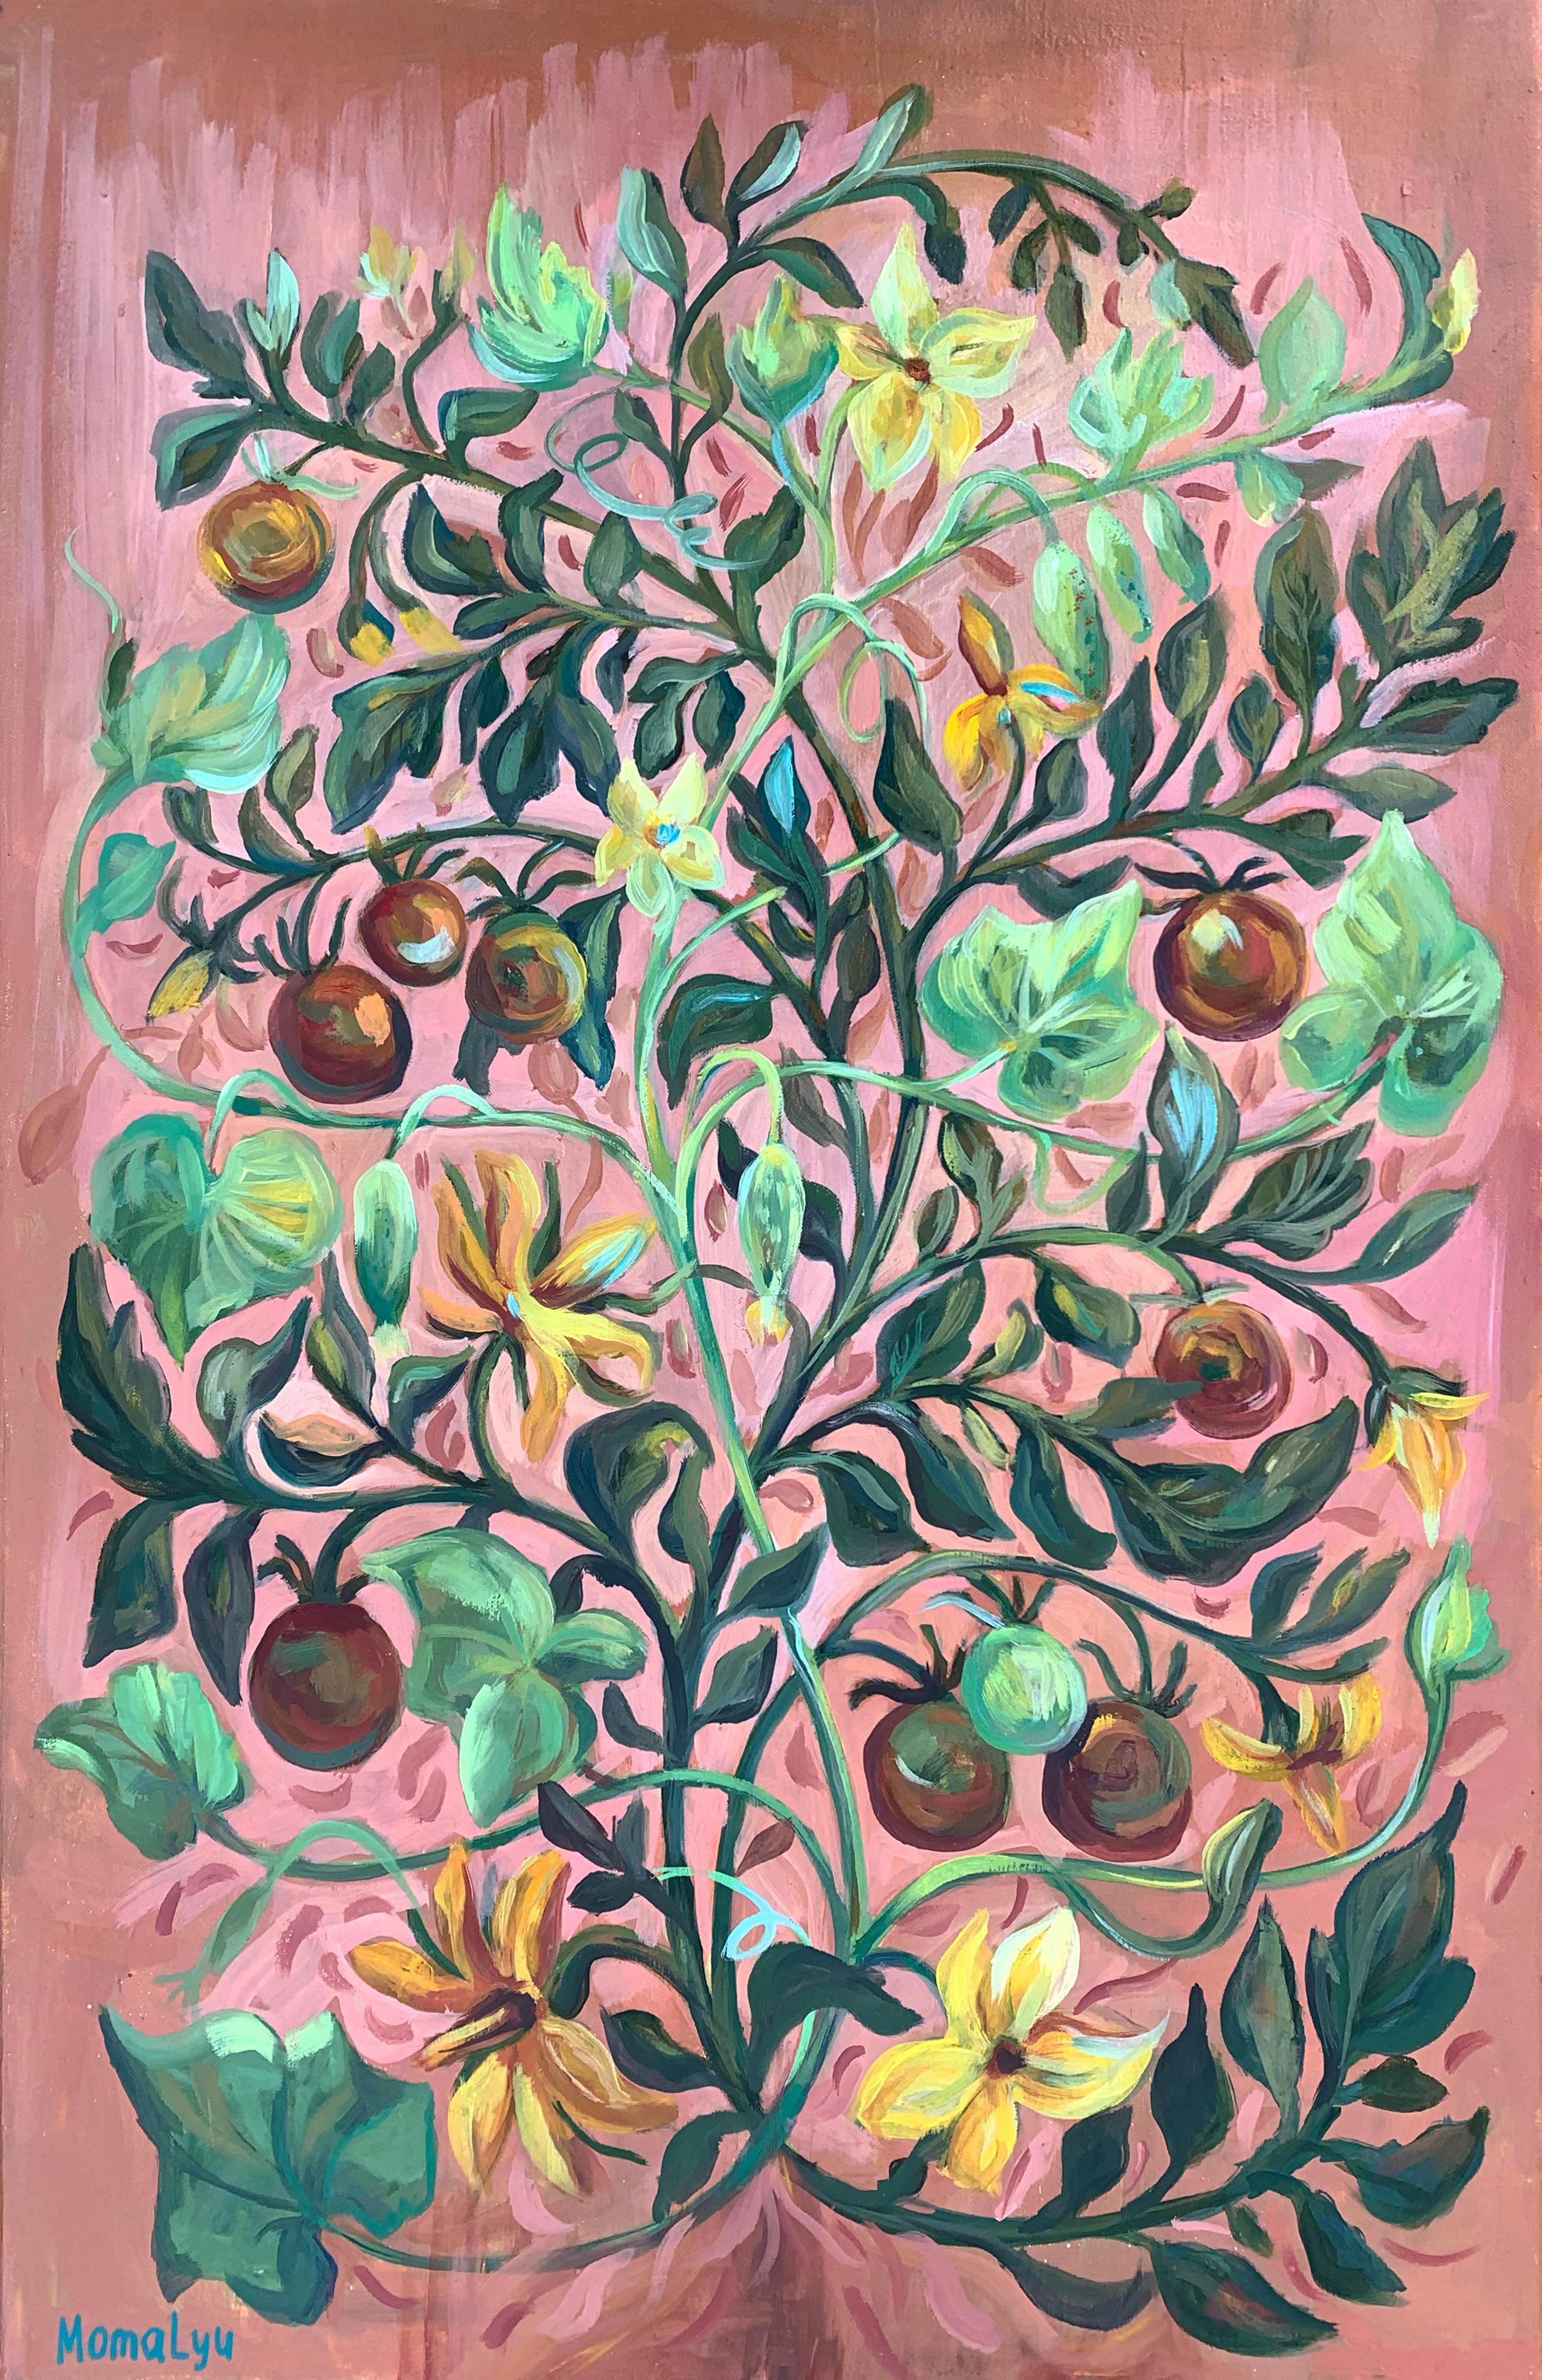 Momalyu Liubov Interior Painting – Grace of Weaves – Verzierung von kletternden Pflanzen. Limitierte Auflage PRINT , Giclee